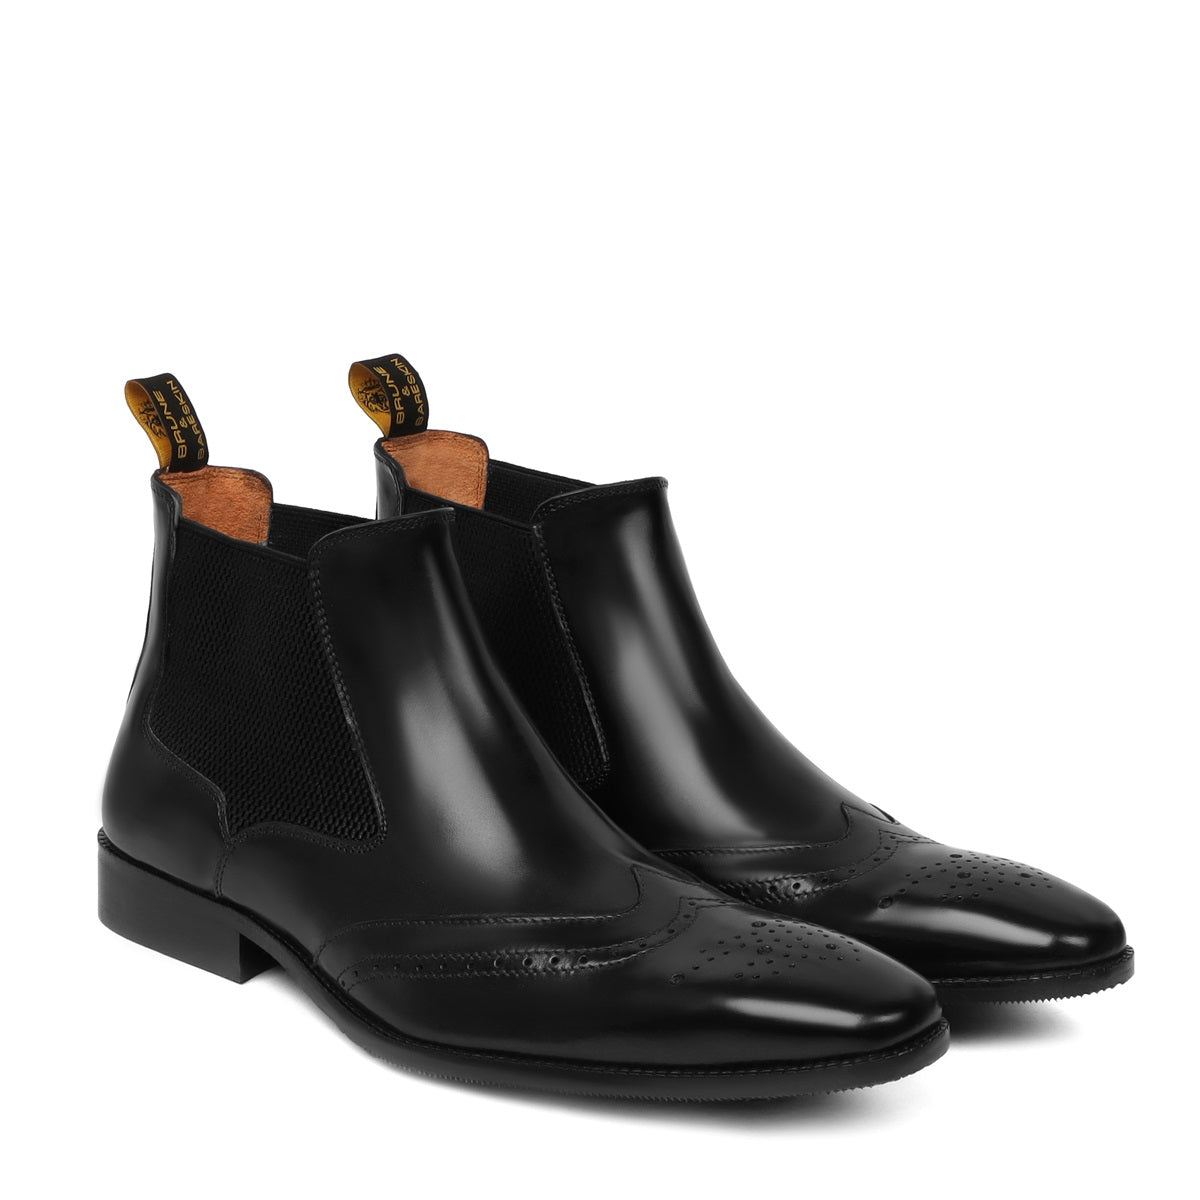 Men's Black Wingtip Quarter Brogue Leather Boots by Brune & Bareskin